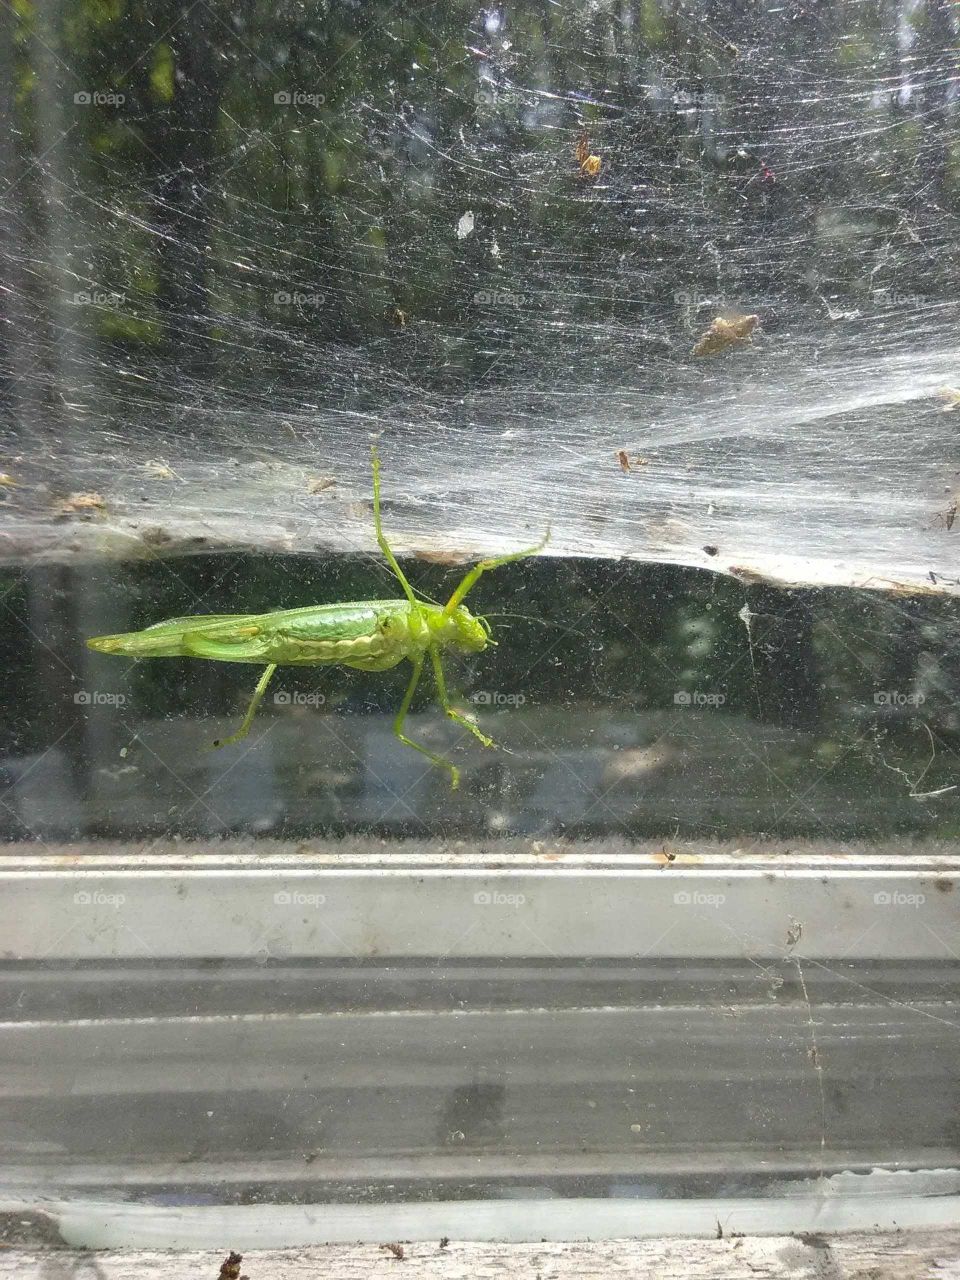 grasshopper caught in a web